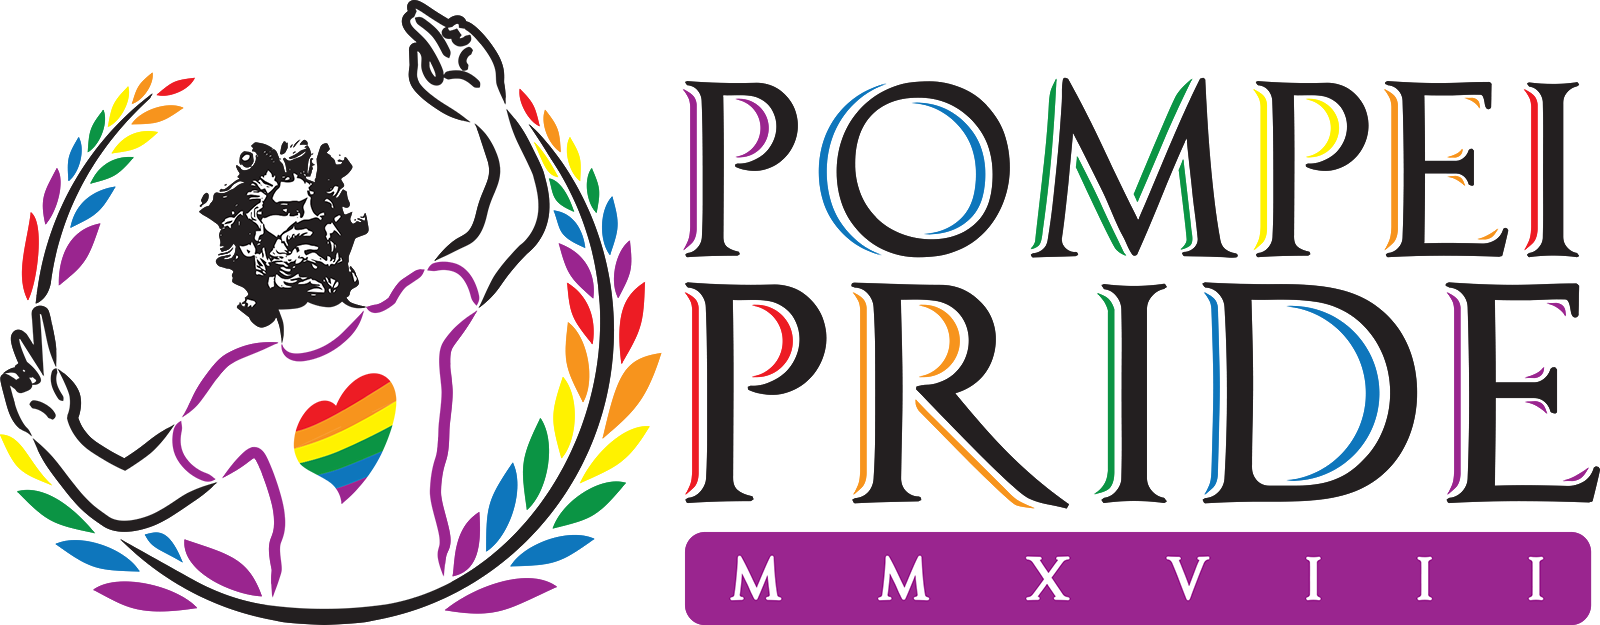 Pompei Pride - 30 Giugno 2018